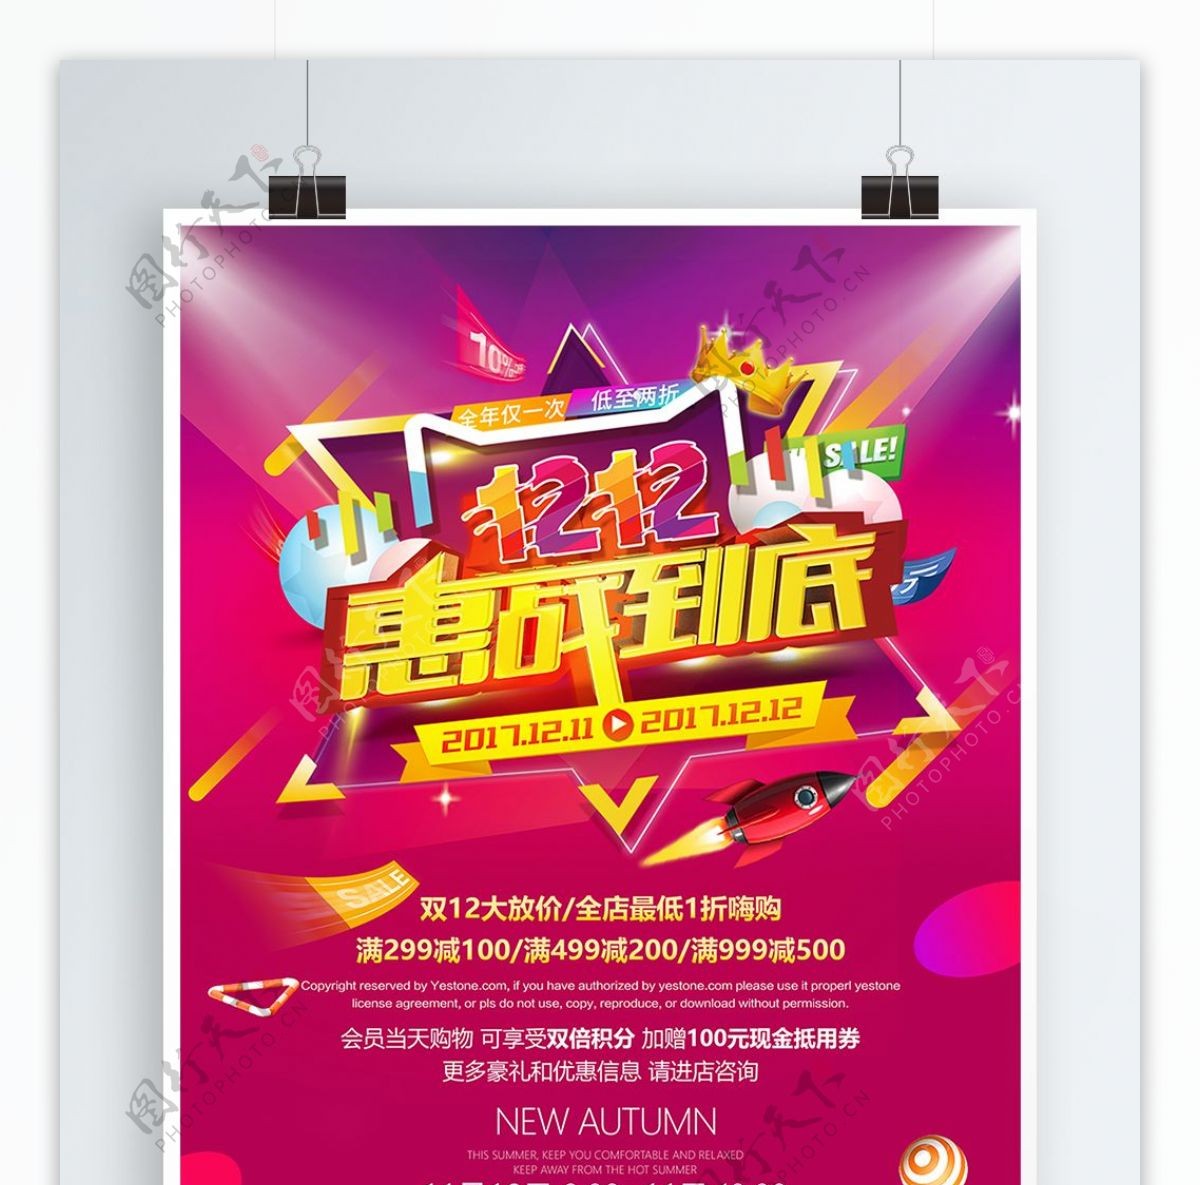 双12惠战到底促销活动宣传海报psd模板